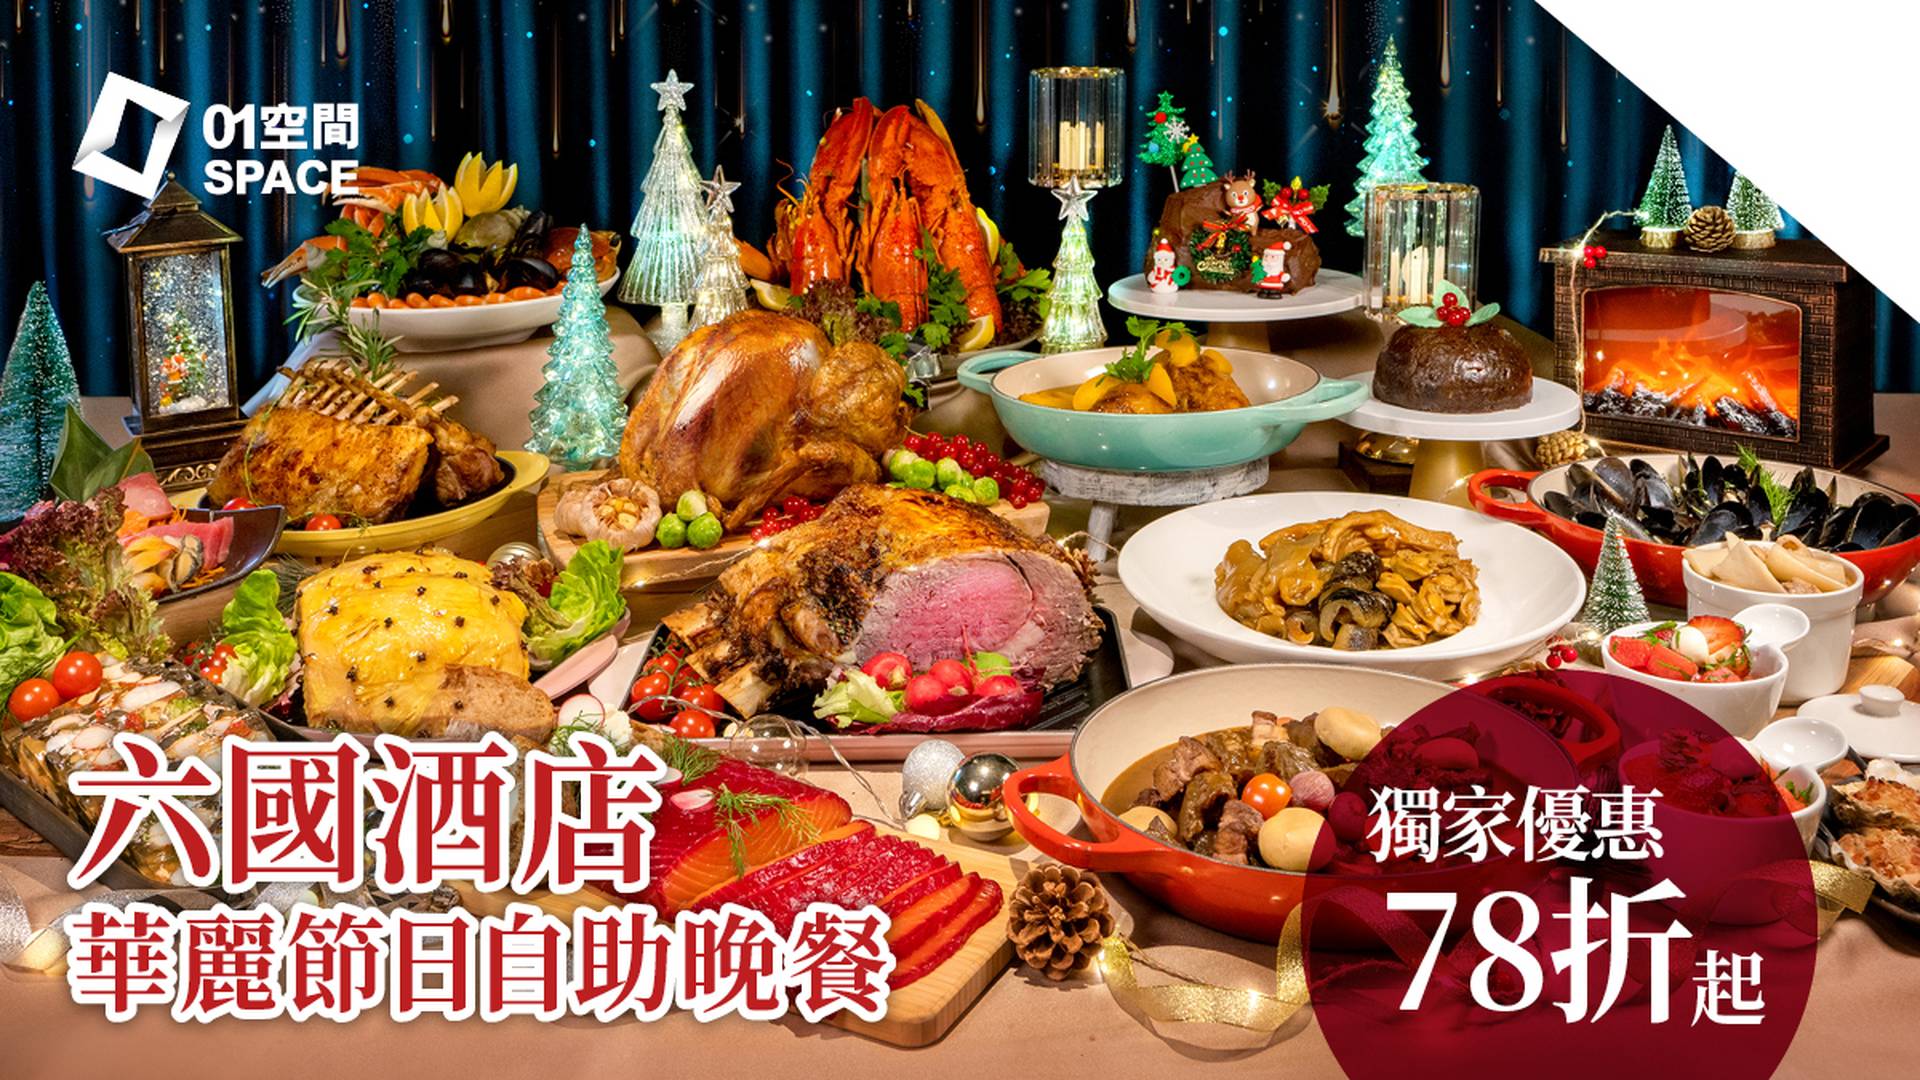 【01空間聖誕自助餐 】 六國酒店Le Menu華麗盛宴‧自助晚餐 | 龍蝦 | 花膠 | 特級牛扒 | 低至78折 |